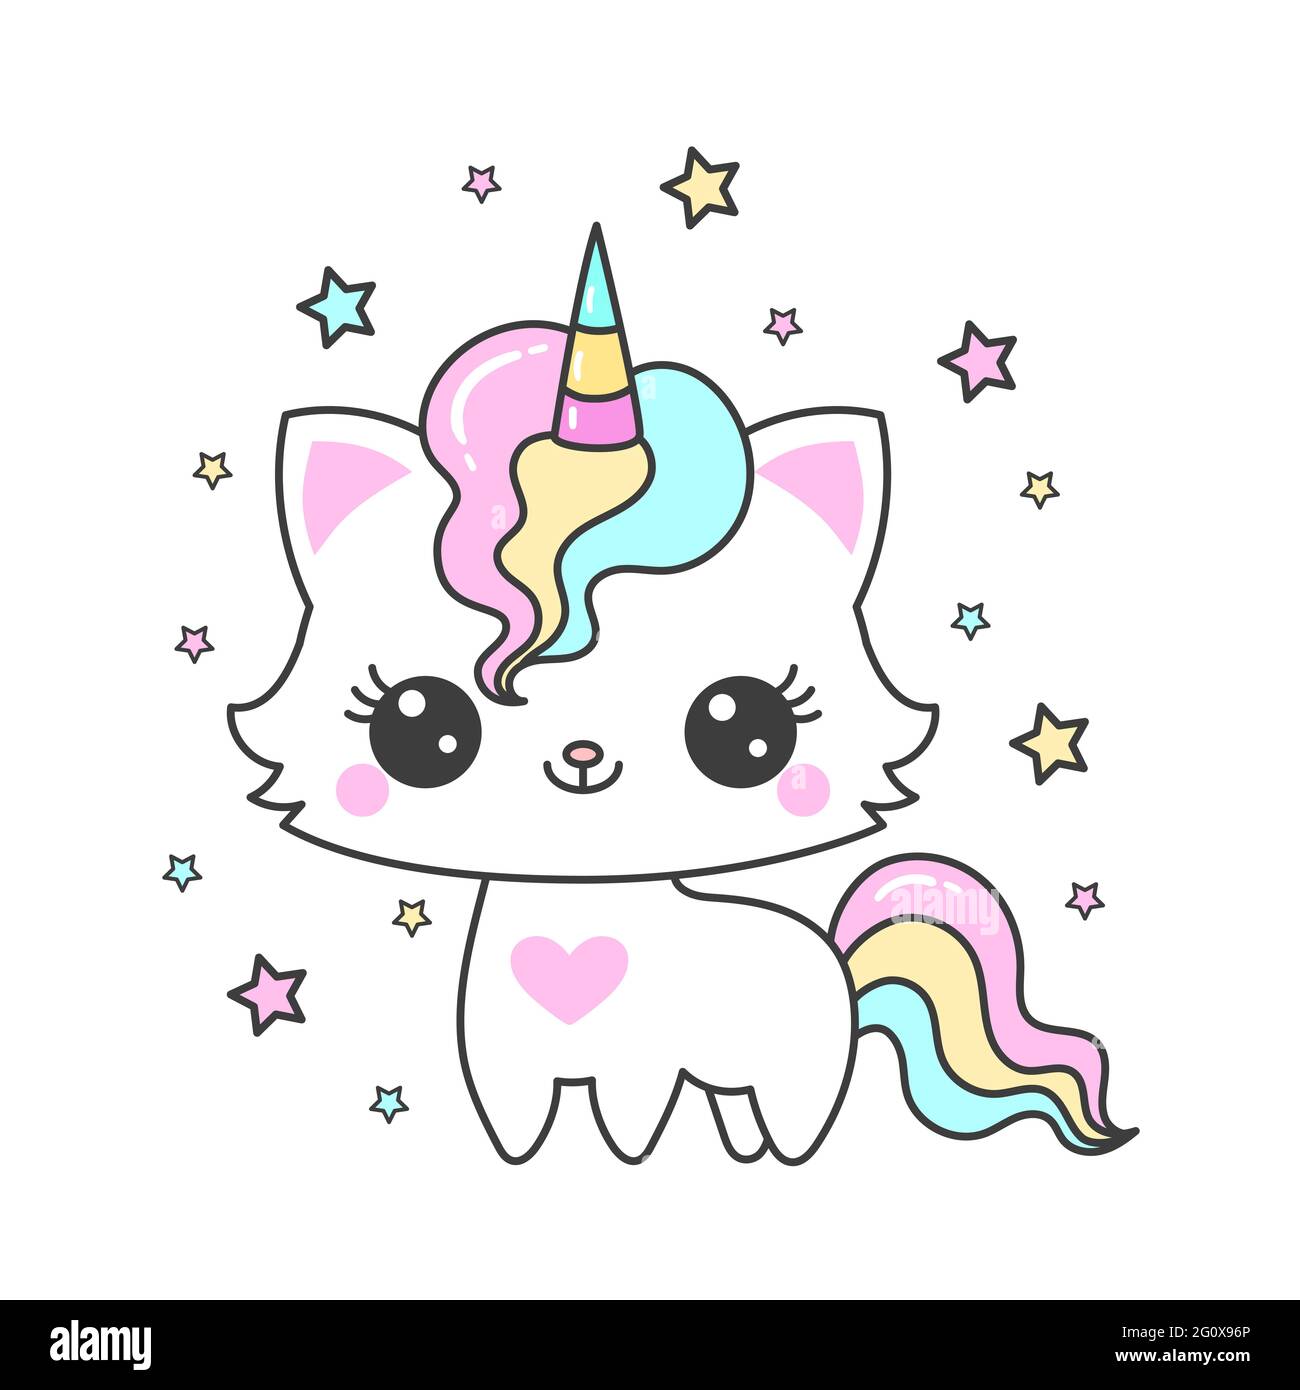 Adorable dessin animé chat licorne et étoiles. Animal fantastique. Convient aux imprimés, affiches, tee-shirts, autocollants et cartes postales pour enfants. Vecteur Illustration de Vecteur